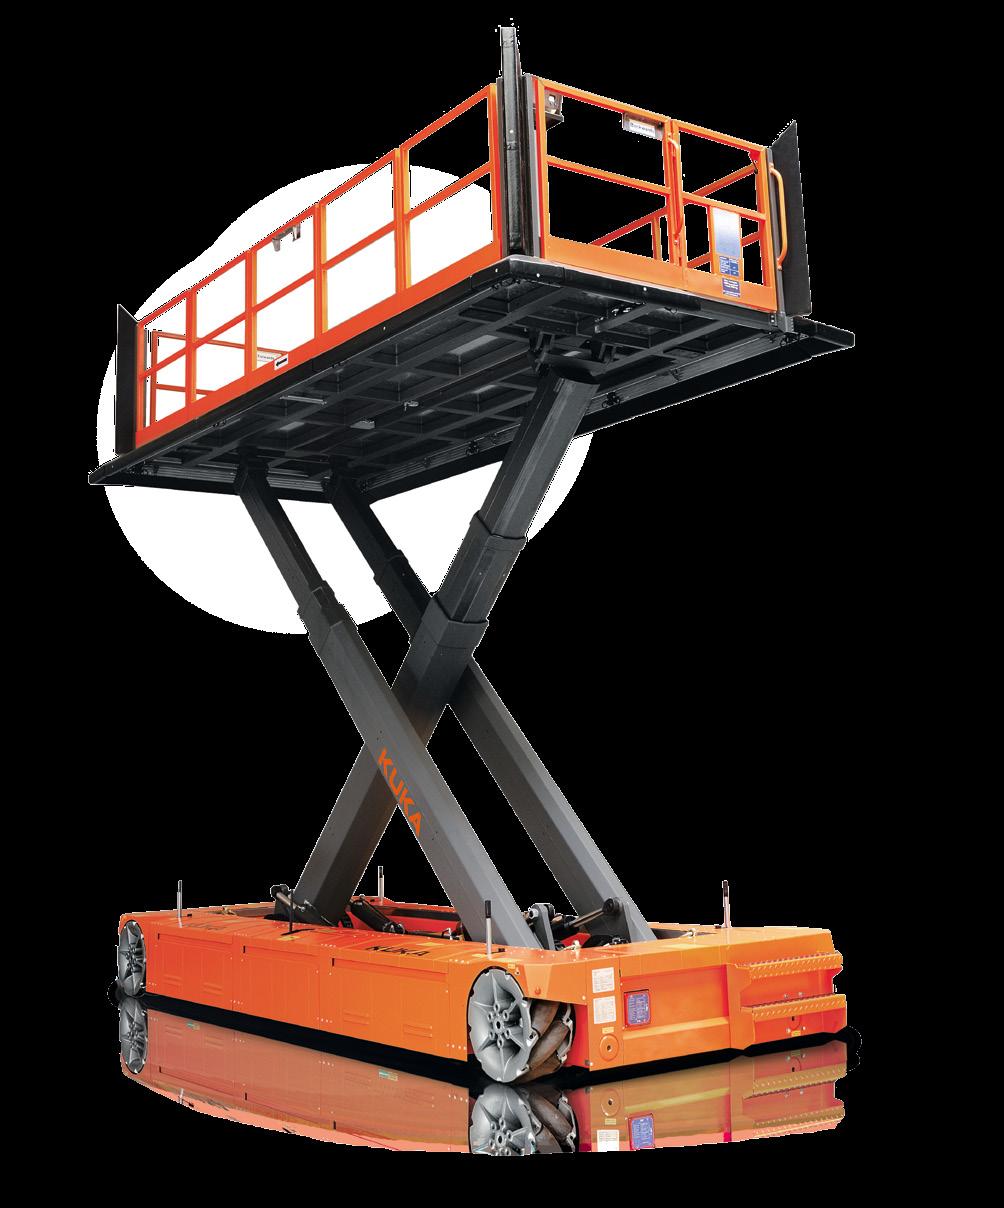 Der KUKA omnimove Triple Lift befördert die Werker sicher, komfortabel und präzise ans Montageziel. Dies ermöglicht hochflexibles Arbeiten, beispielsweise bei Bau und Wartung von Flugzeugen.